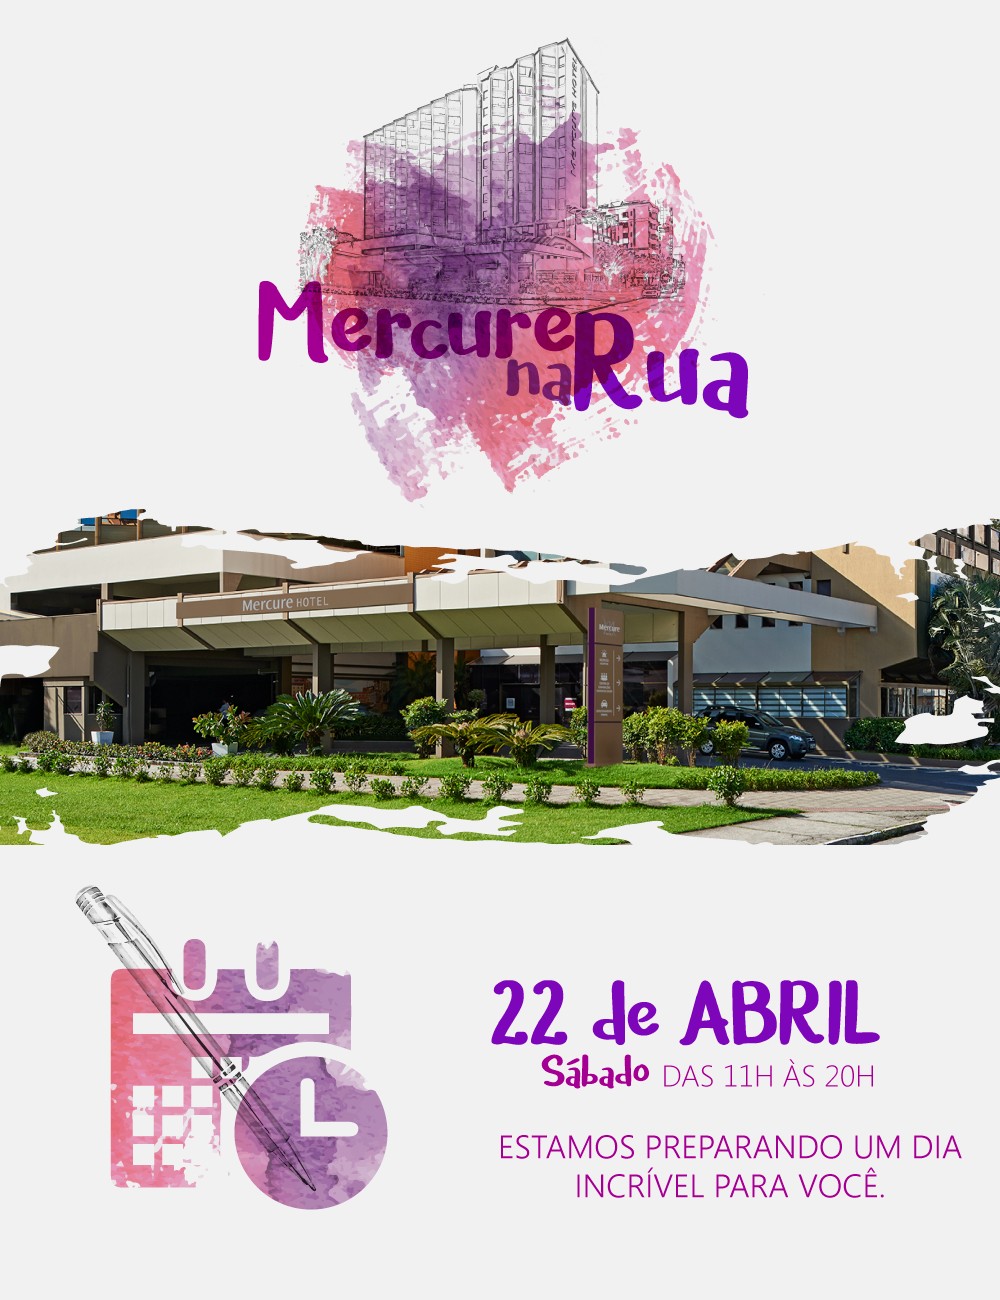 Hotel Mercure Florianópolis Convention promove evento com atrações gastronômicas, culturais e surpresas